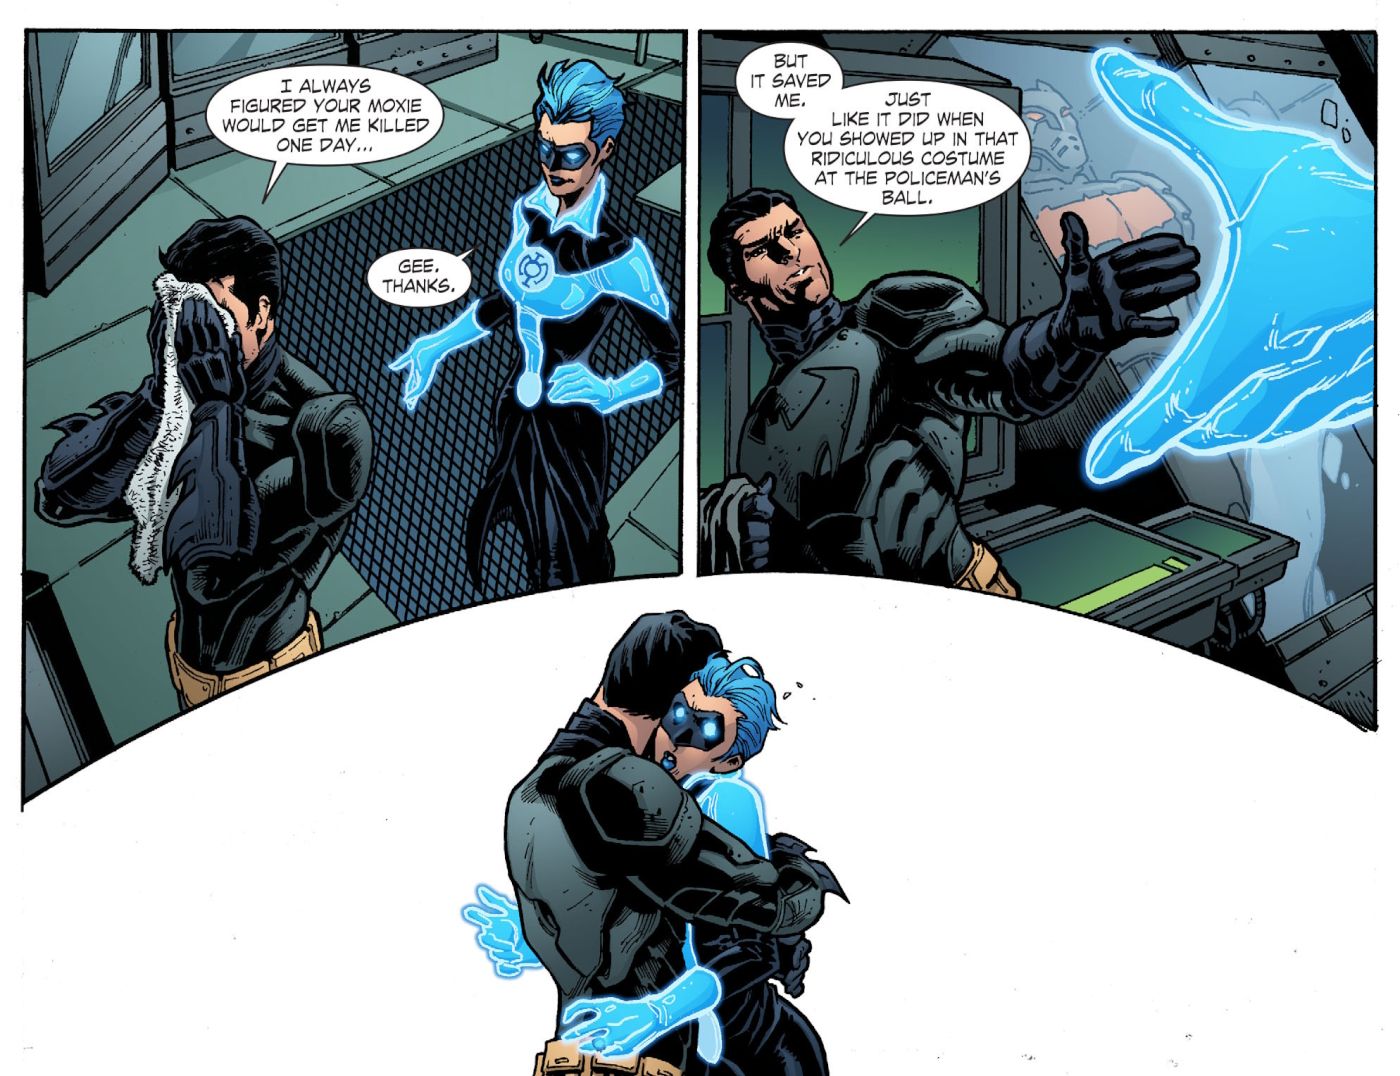 Smallville: Continuity #9, as Blue Lantern, Barbara Gordon even inspires Batman